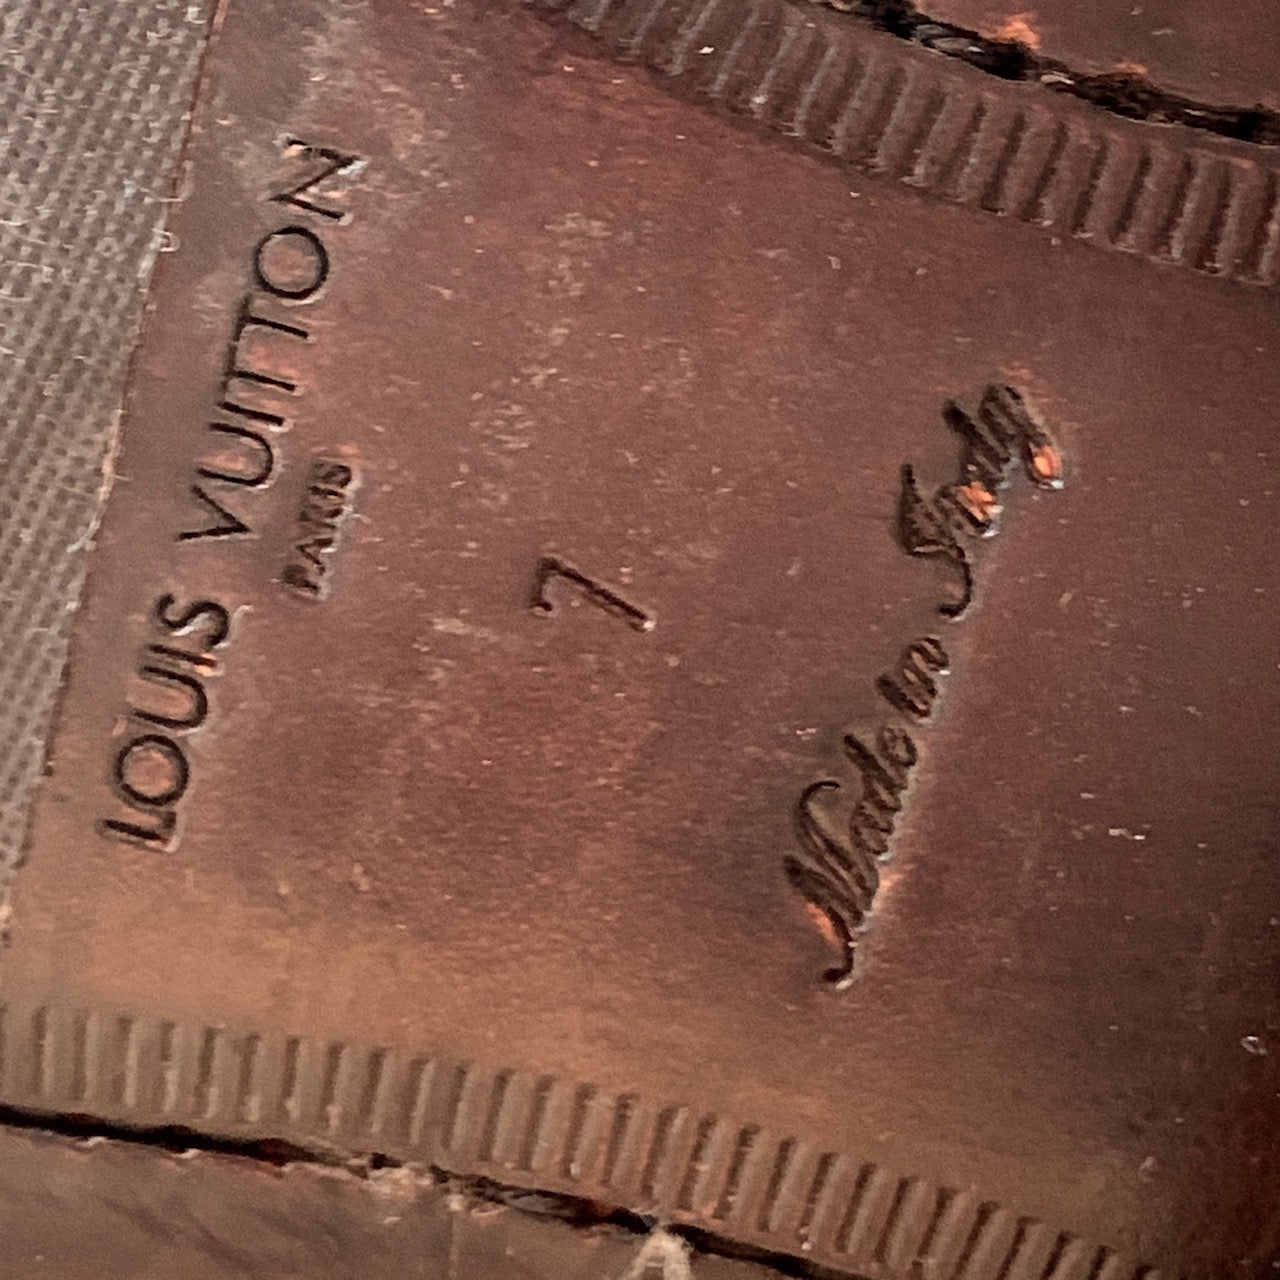 Louis Vuitton Leather Derby Shoes - Brown Oxfords, Shoes - LOU775370